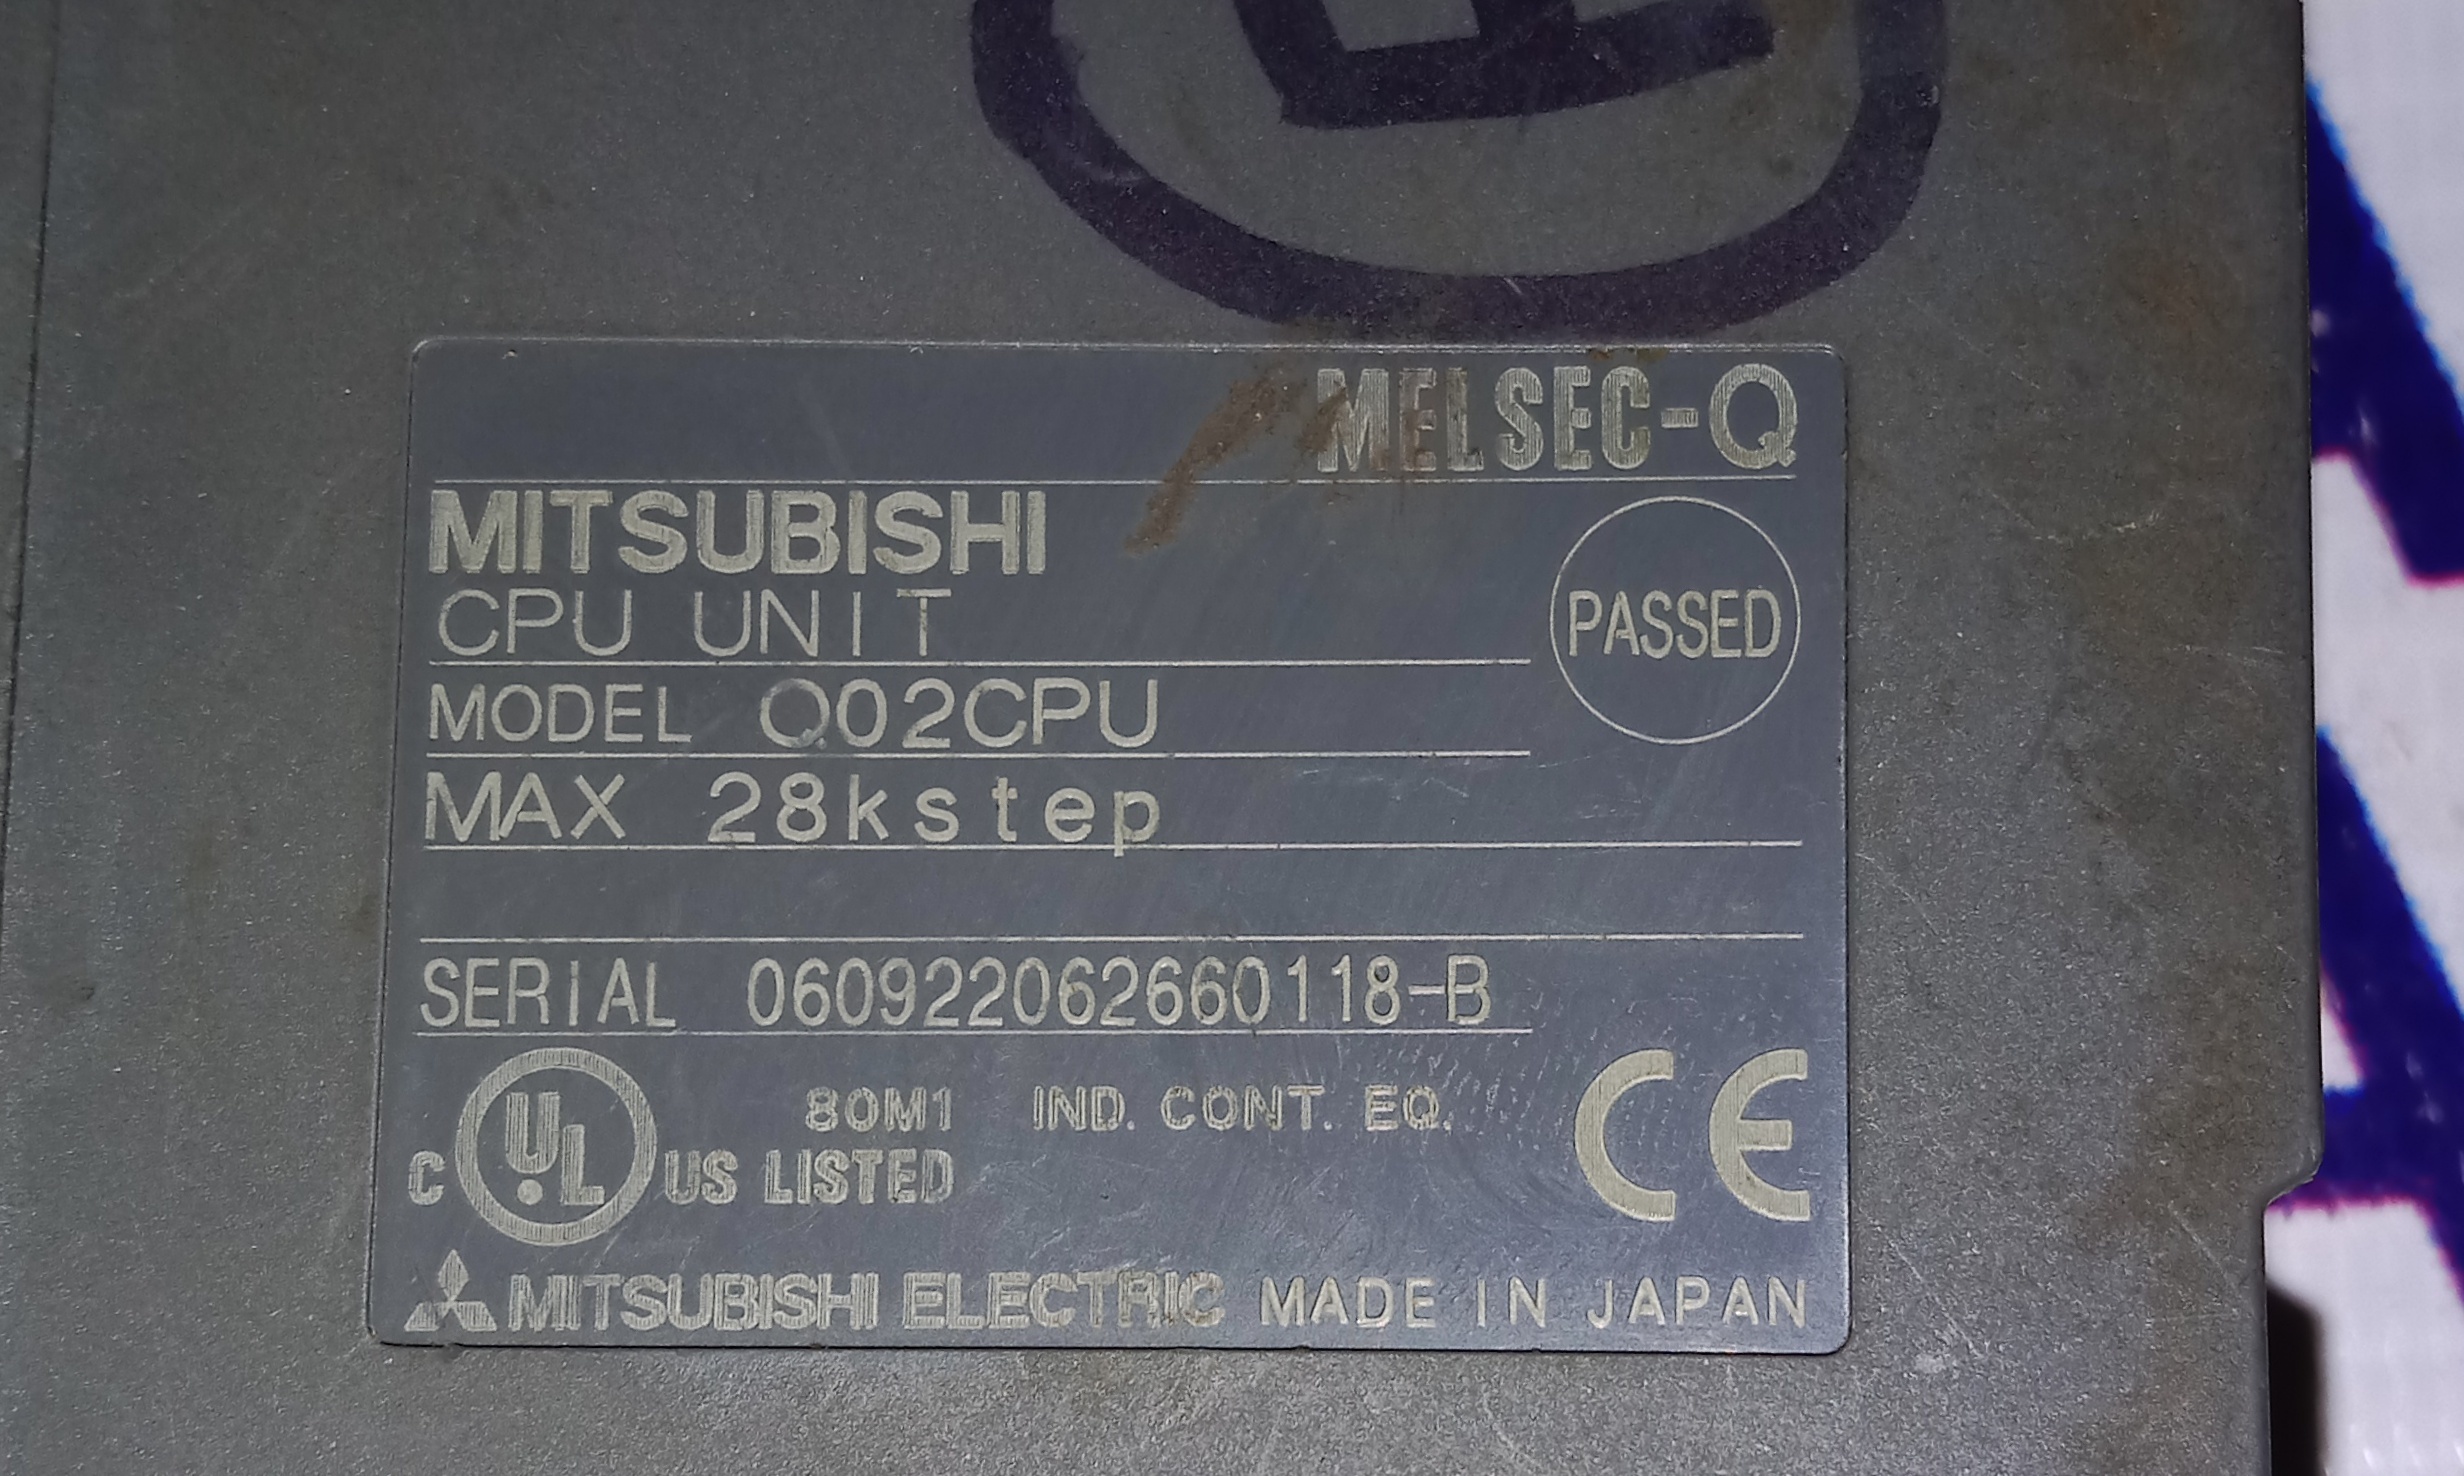 MITSUBISHI Cpu Unit Q02CPU